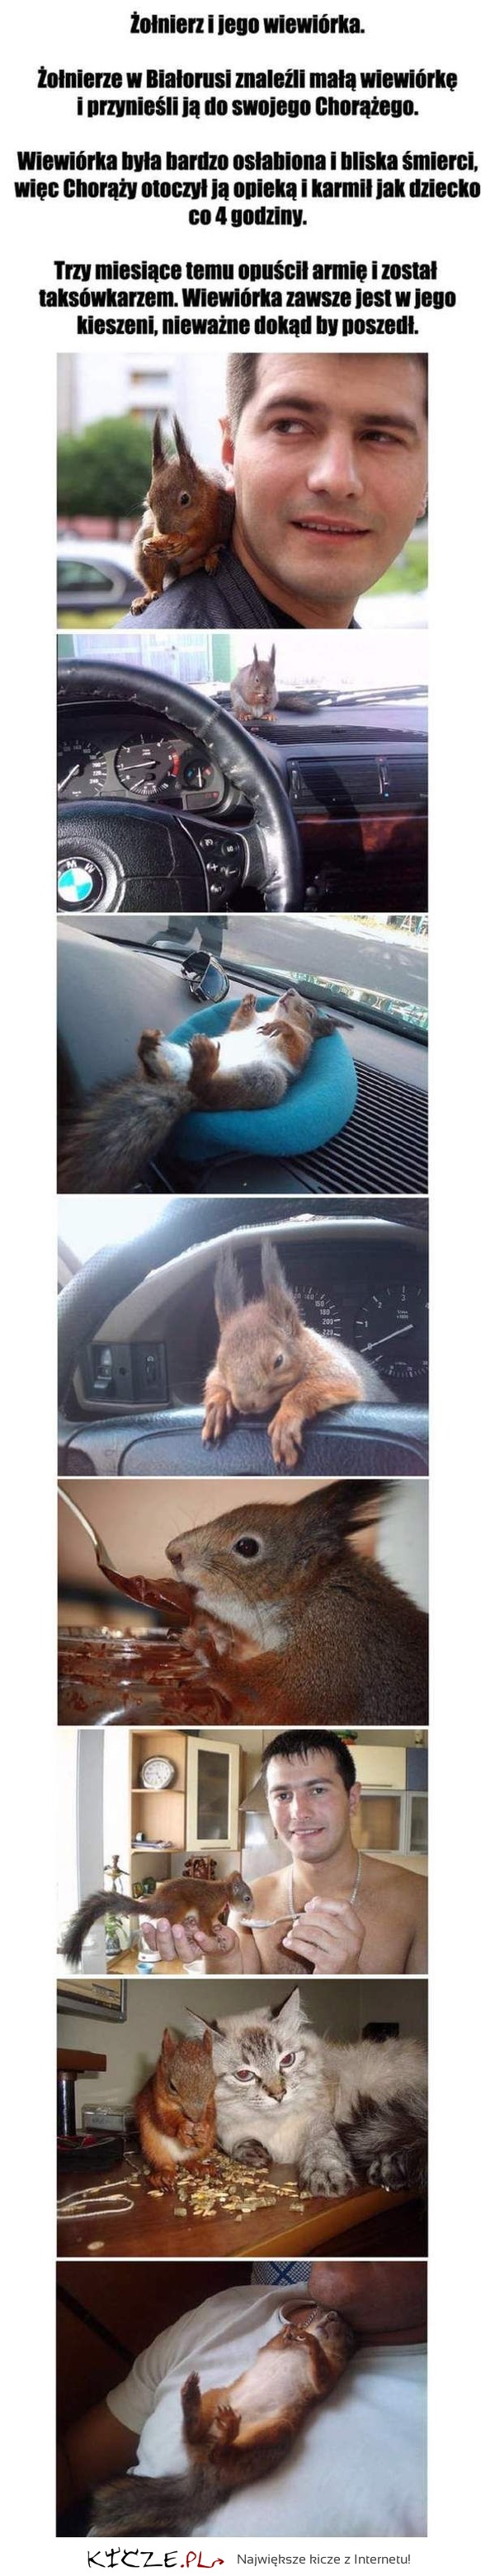 Świetna historia wiewiórki! DUŻO ZDJĘĆ!